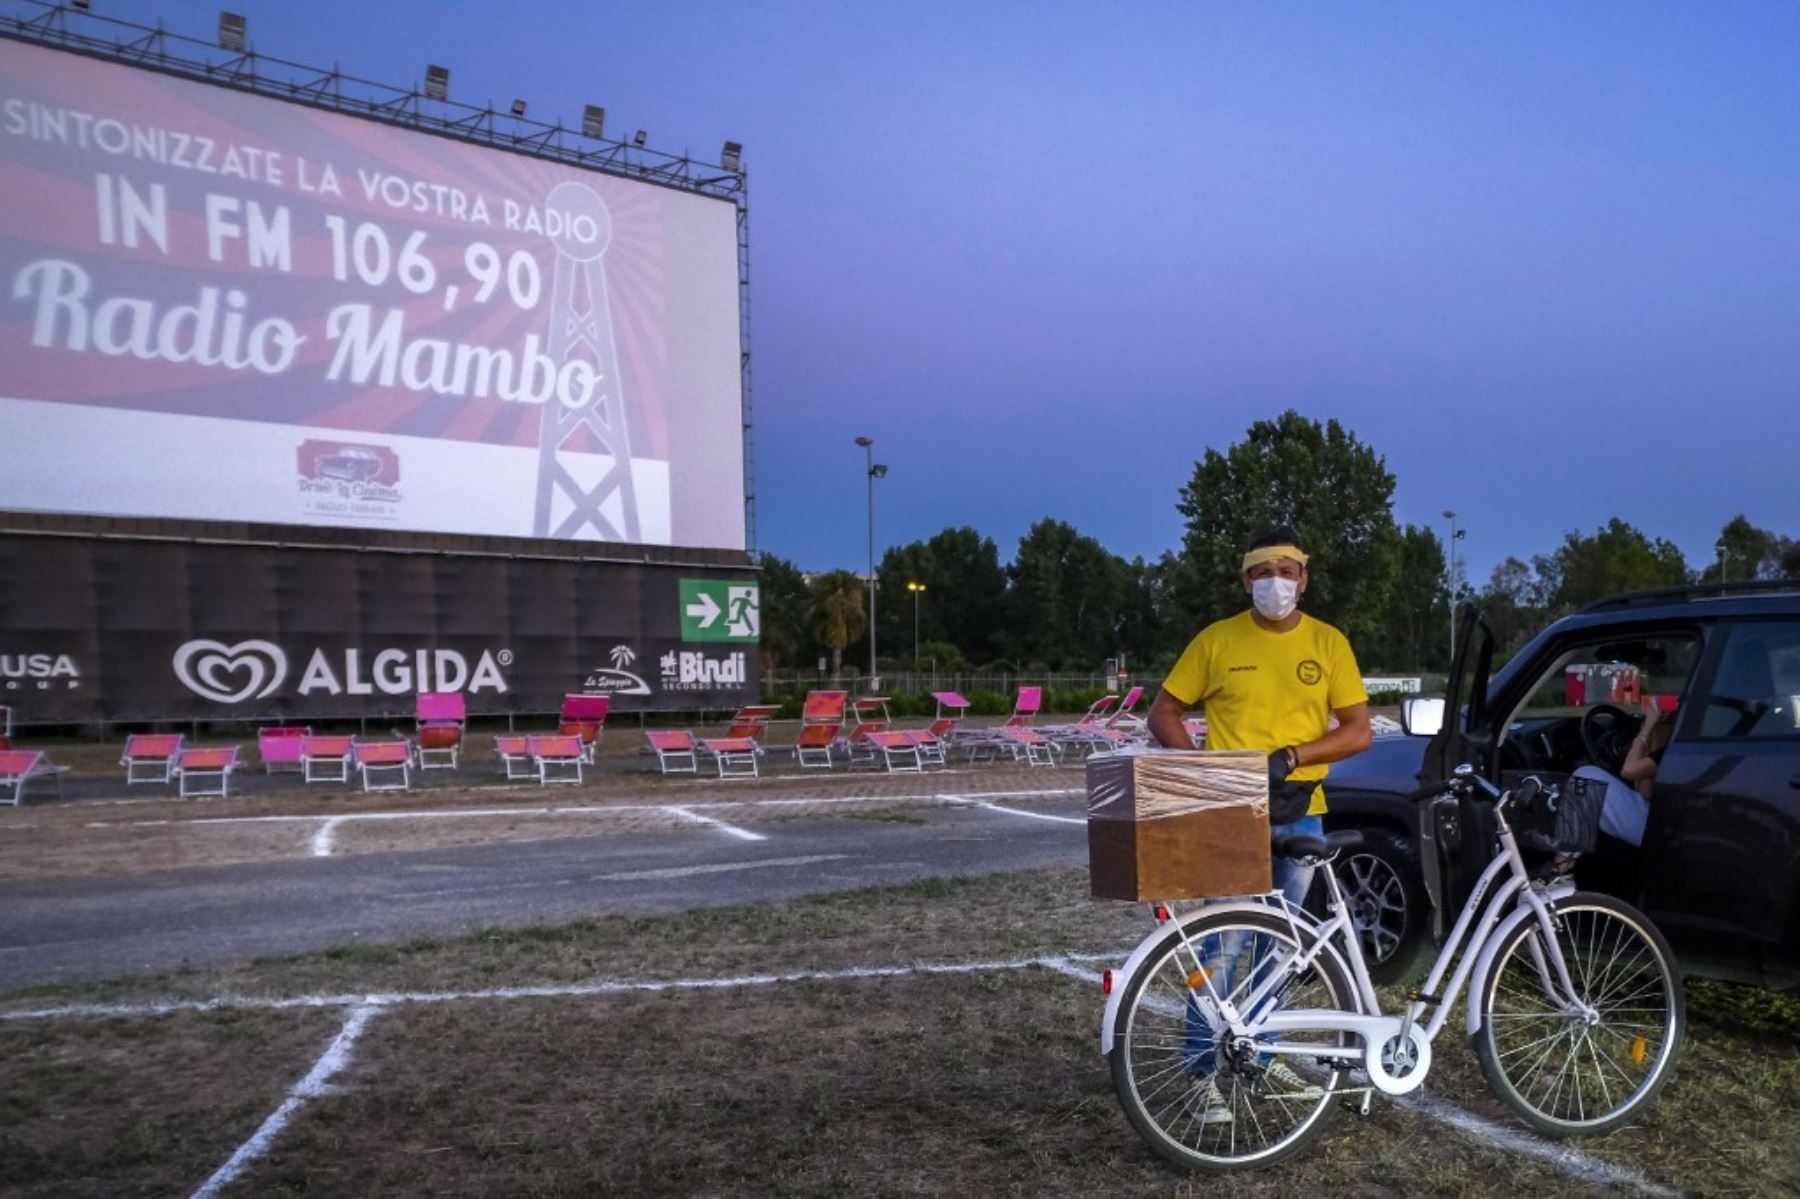 Un camarero en bicicleta entrega comida y bebidas a las personas que se preparan para ver desde su automóvil la comedia italiana "Tolo Tolo" dirigida por Checco Zalone en la noche de apertura del mayor autocine 